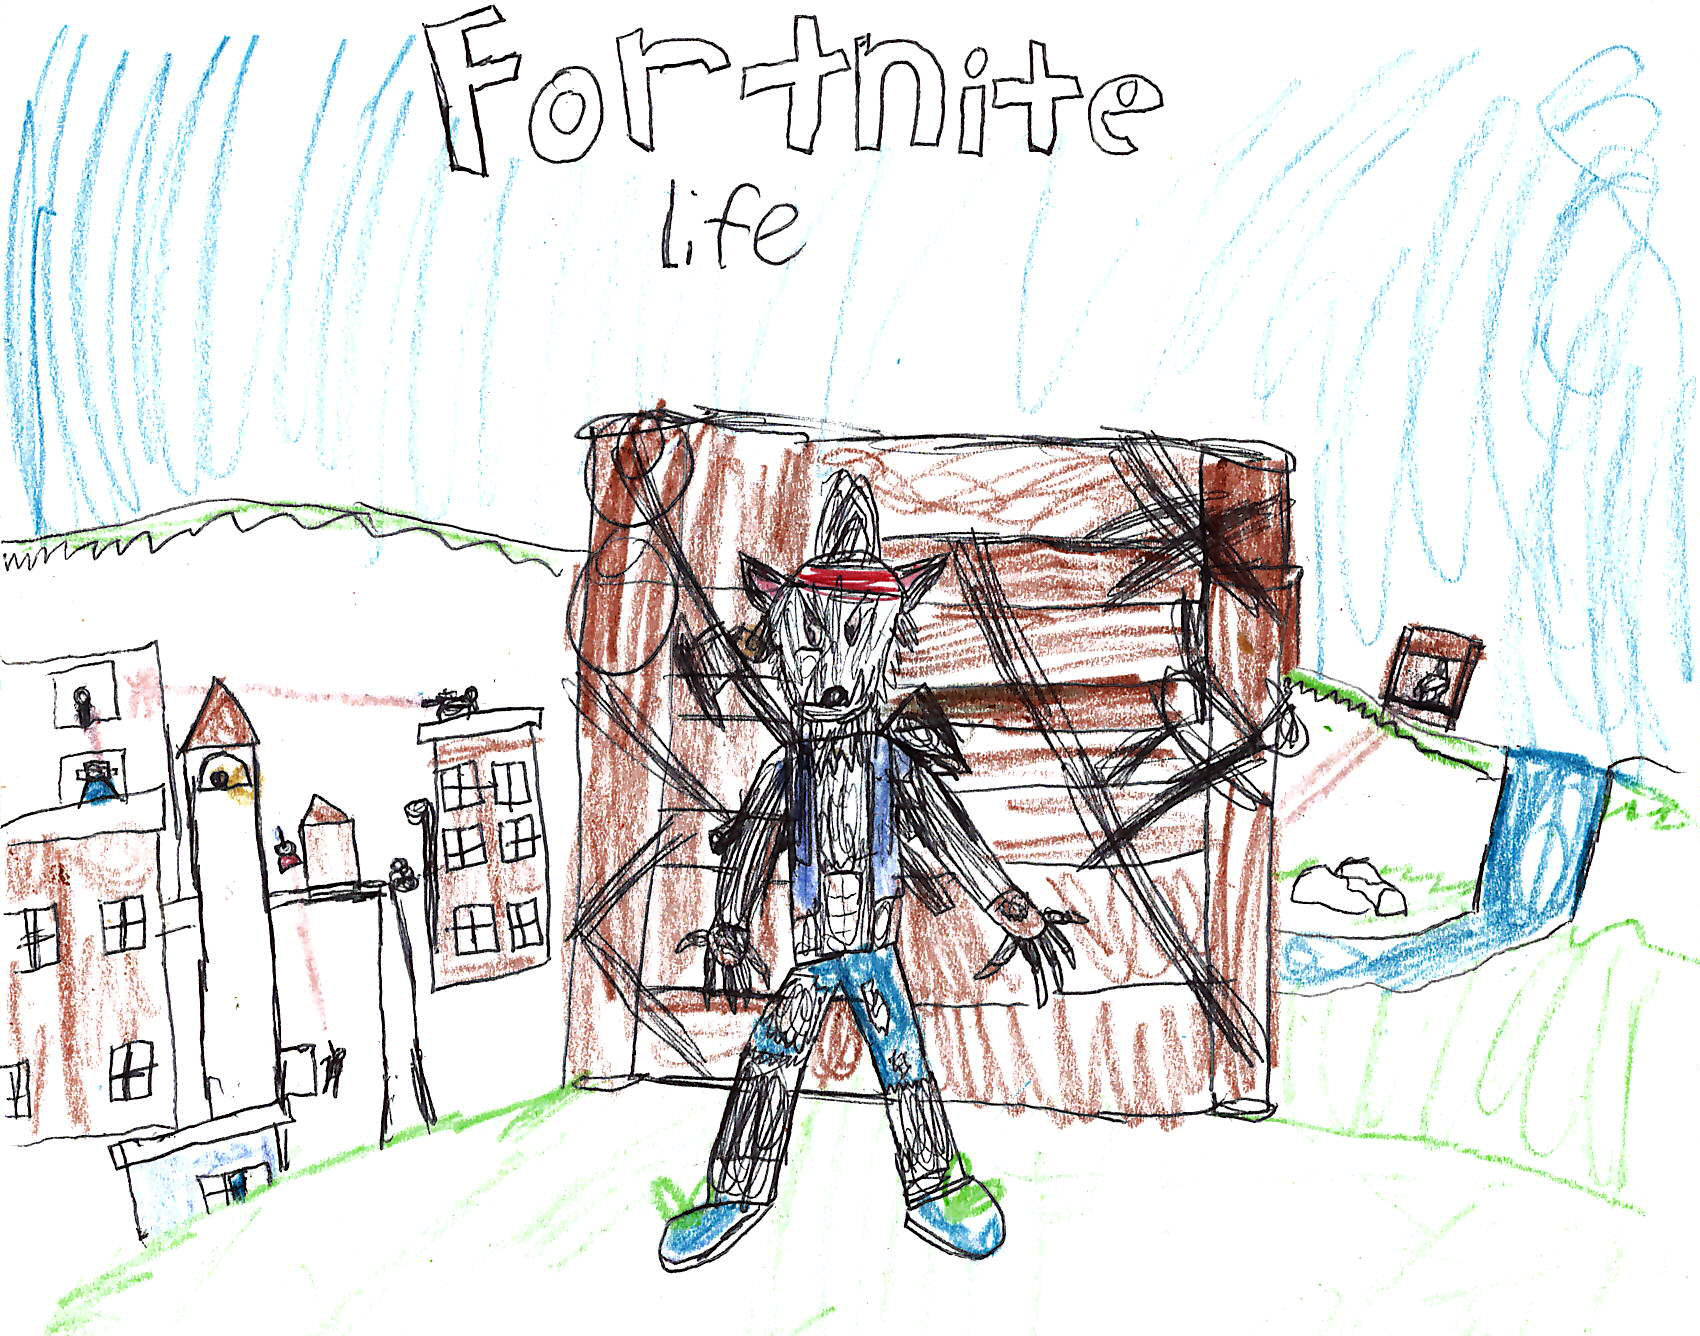 Fortnite Life